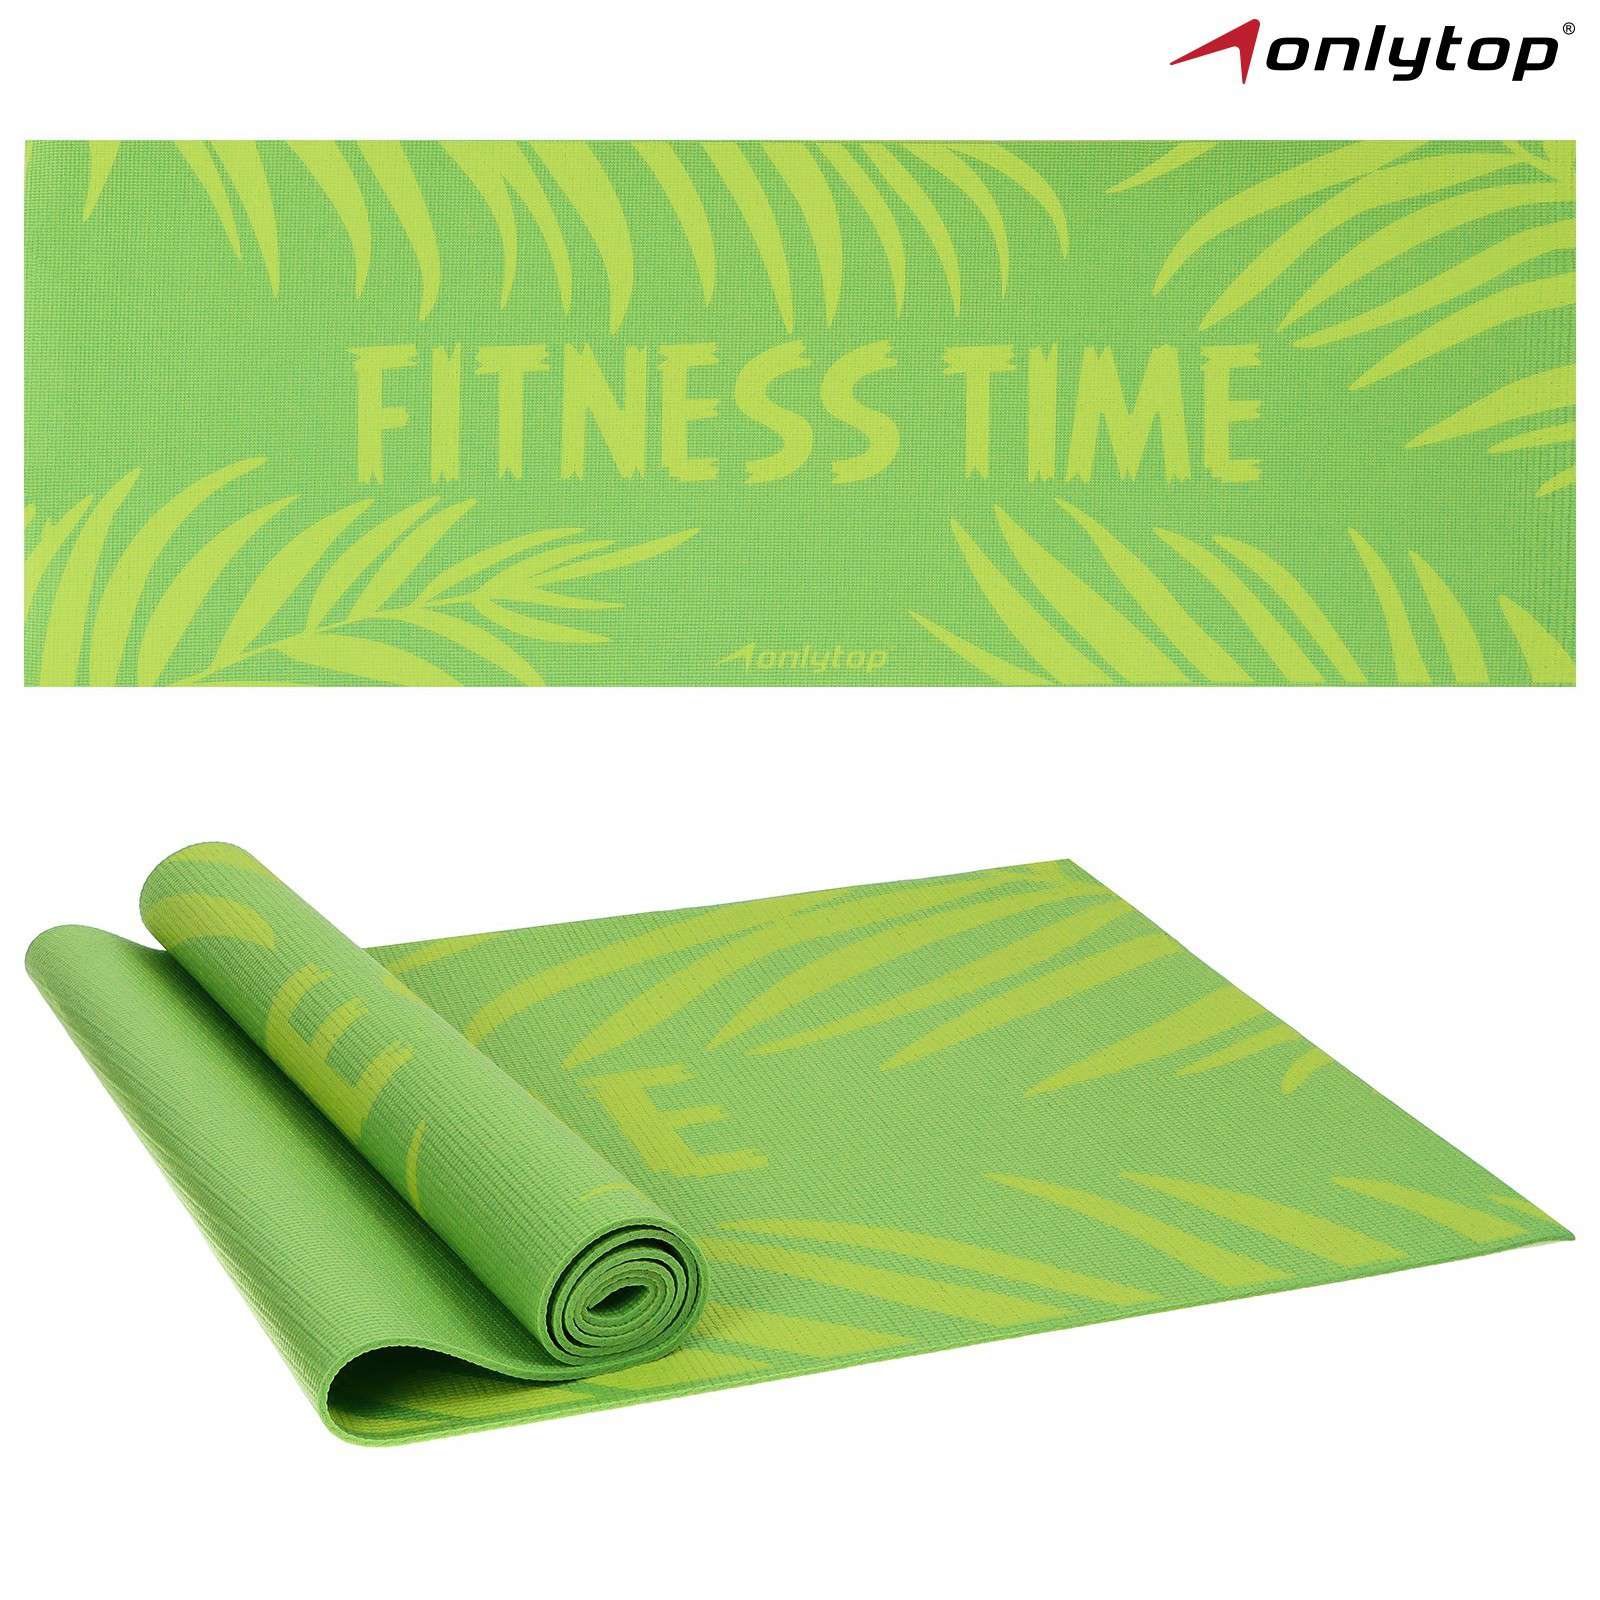 Коврик для фитнеса 7387391 Fitness time 173*61*0,4см цвет зелёный - Пенза 